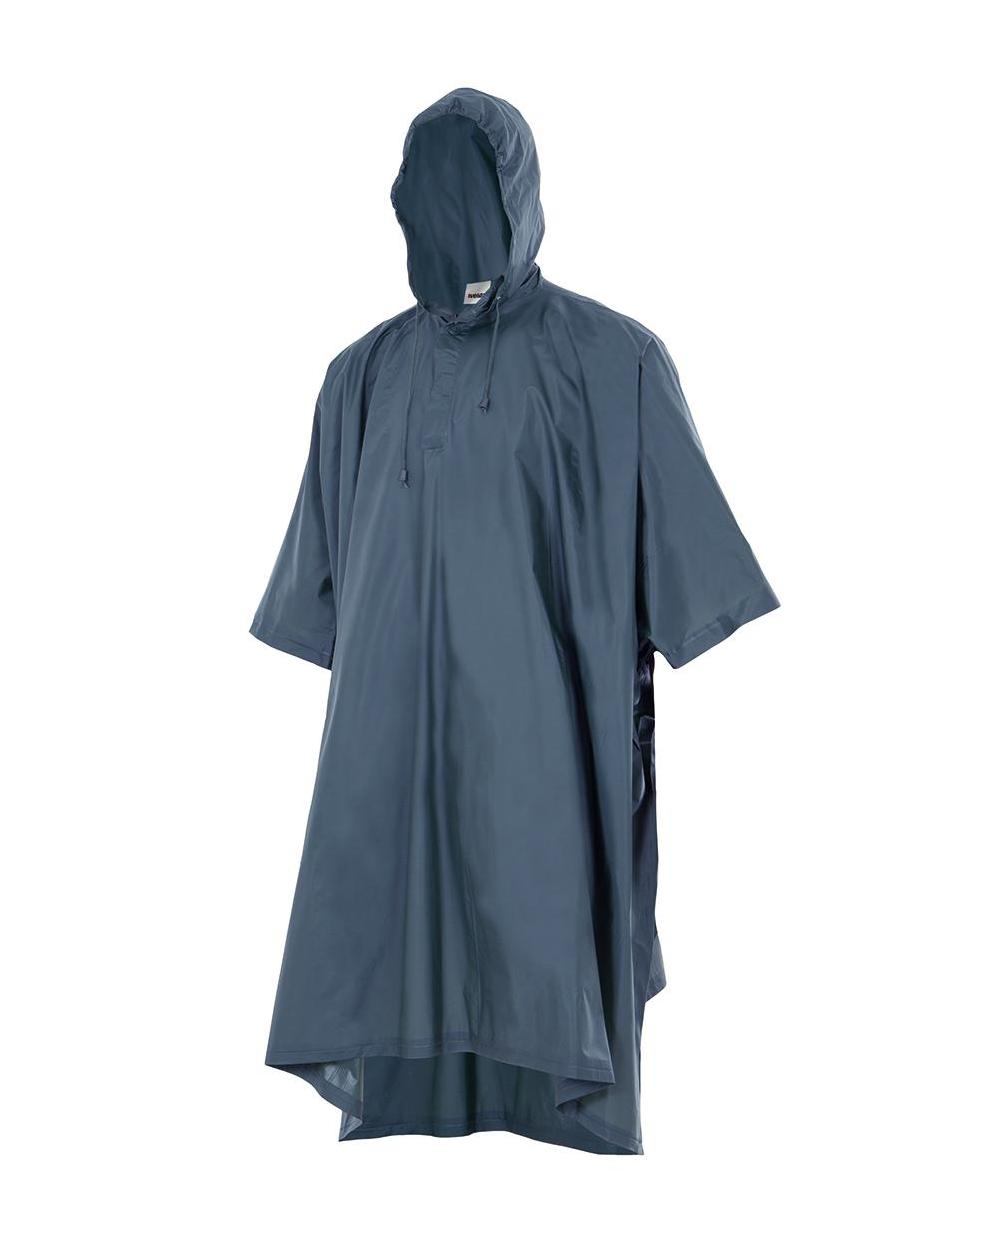 Comprar Poncho de lluvia con capucha serie 187 online barato Azul Marino